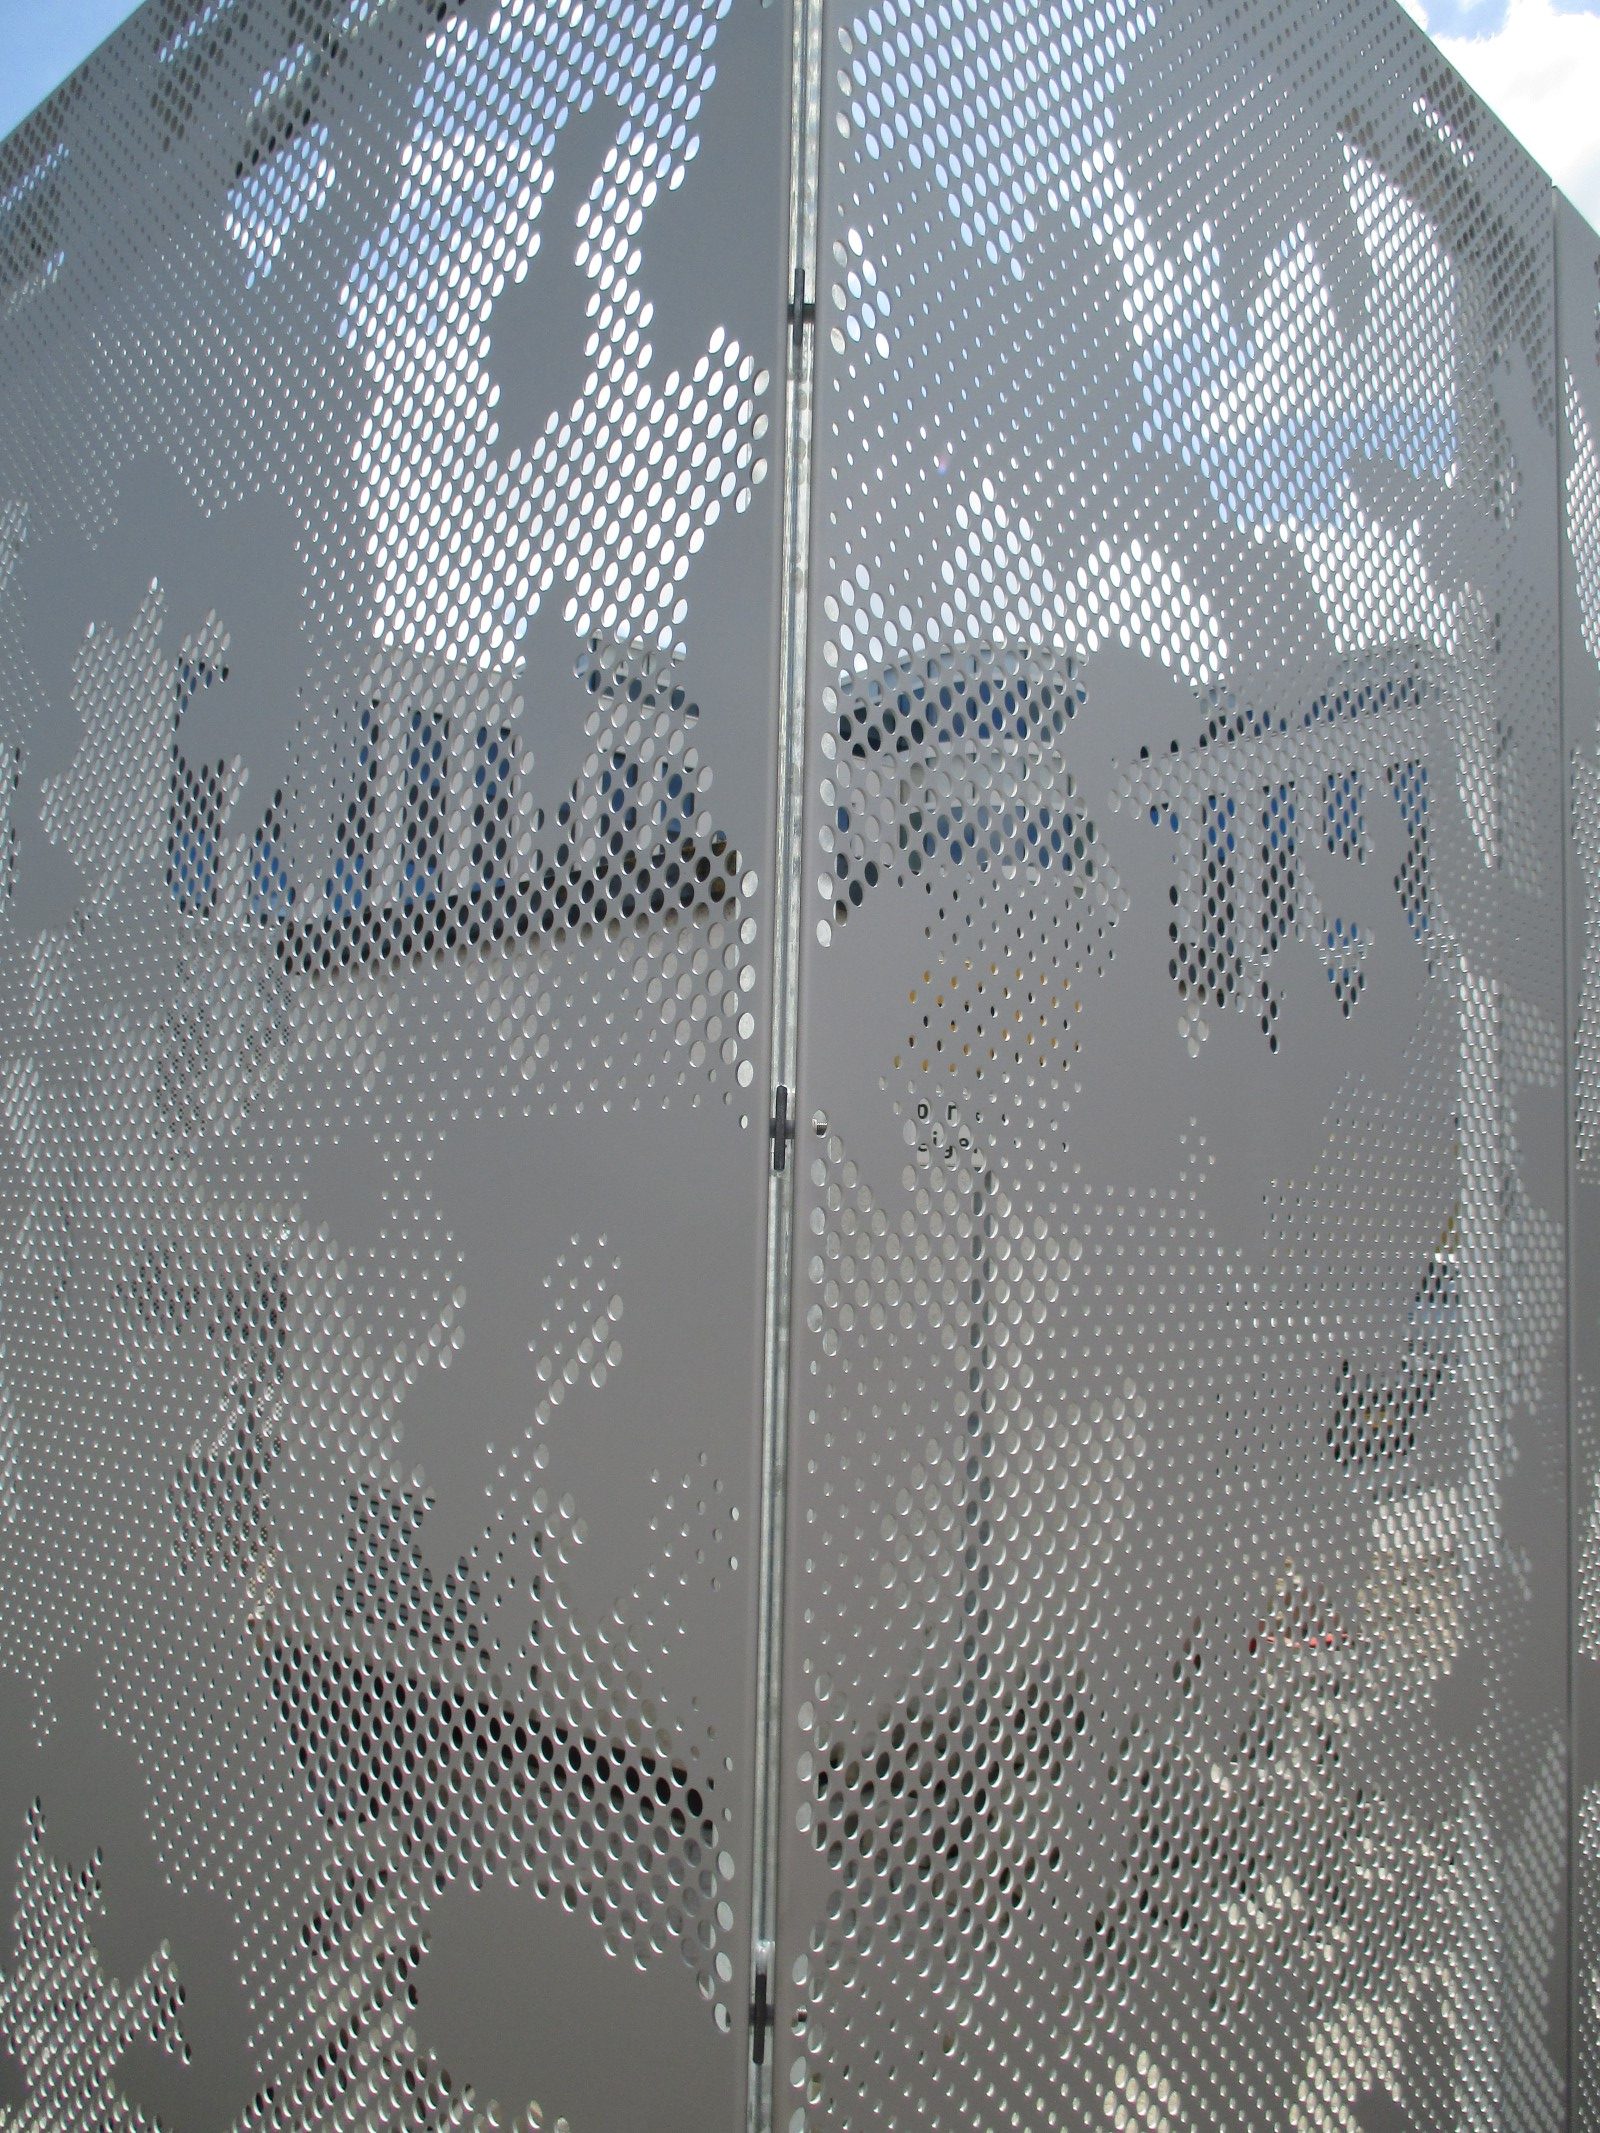 Detail designperforatie van de gevelbekleding van het trappenhuis aan de Paasheuvelweg in Amsterdam